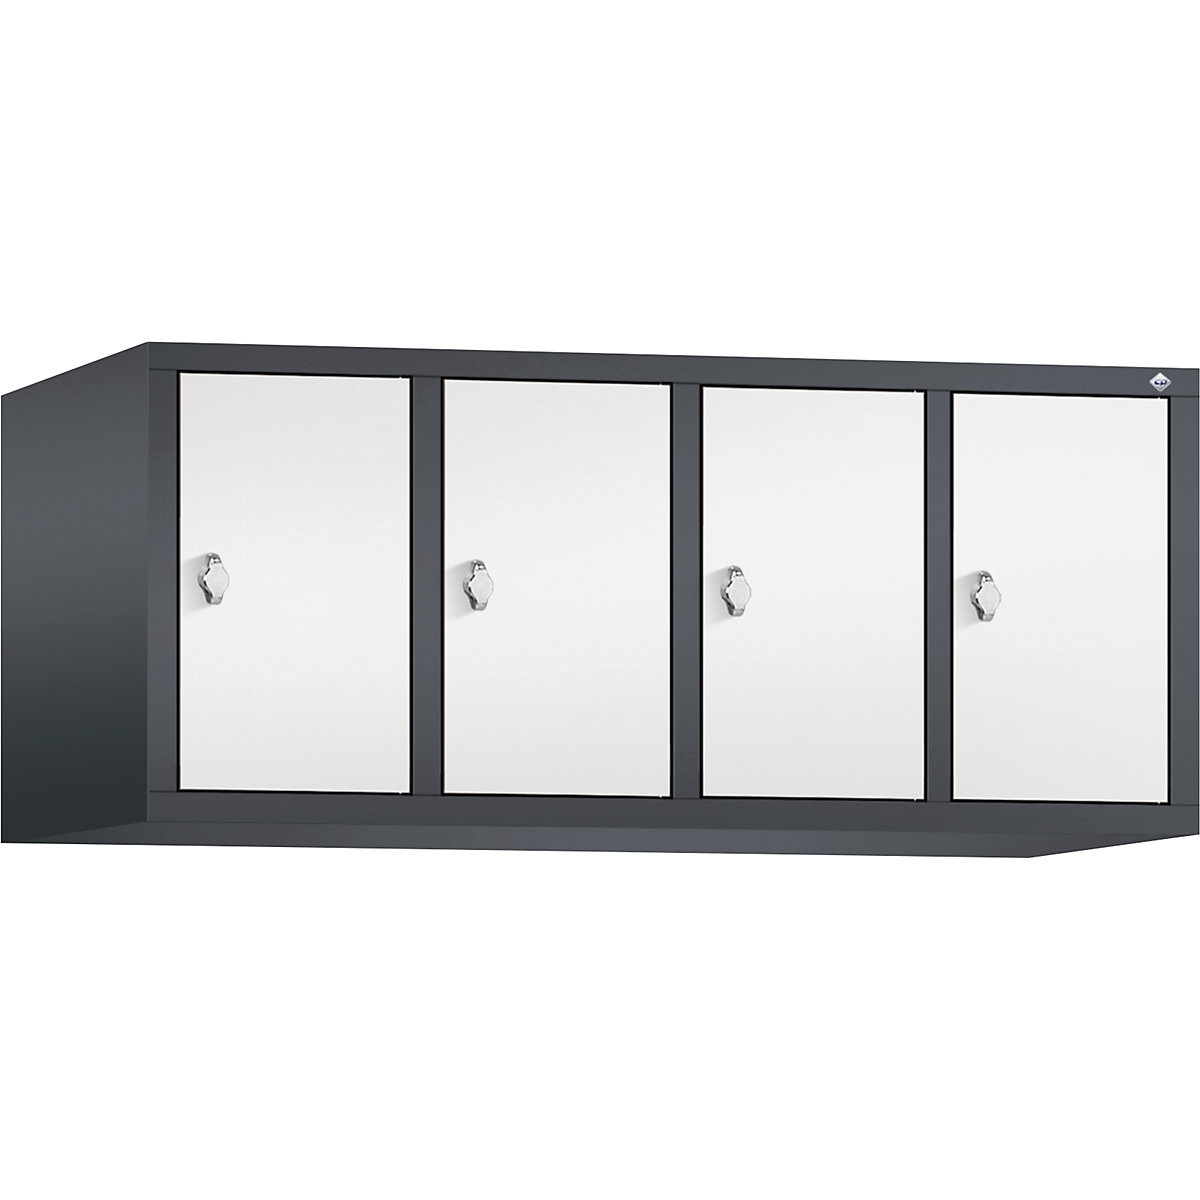 C+P – Altillo CLASSIC, 4 compartimentos, anchura de compartimento 300 mm, gris negruzco / blanco tráfico